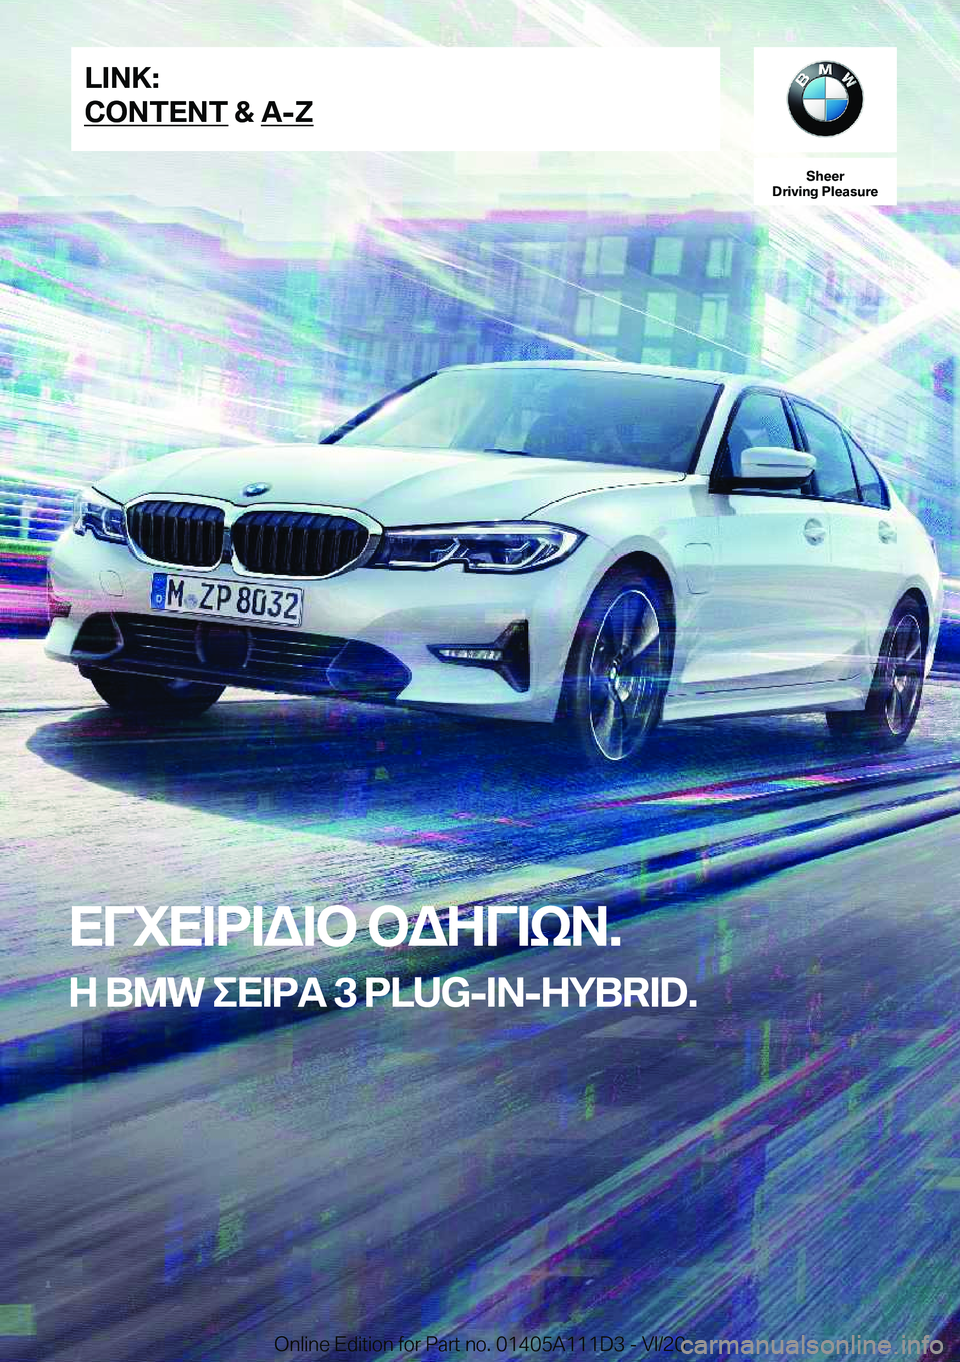 BMW 3 SERIES SEDAN PLUG-IN HYBRID 2021  ΟΔΗΓΌΣ ΧΡΉΣΗΣ (in Greek) �S�h�e�e�r
�D�r�i�v�i�n�g��P�l�e�a�s�u�r�e
XViX=d=W=b�bWZV=kA�.
Z��B�M�W�eX=dT��3��P�L�U�G�-�I�N�-�H�Y�B�R�I�D�.�L�I�N�K�:
�C�O�N�T�E�N�T��&��A�-�Z�O�n�l�i�n�e��E�d�i�t